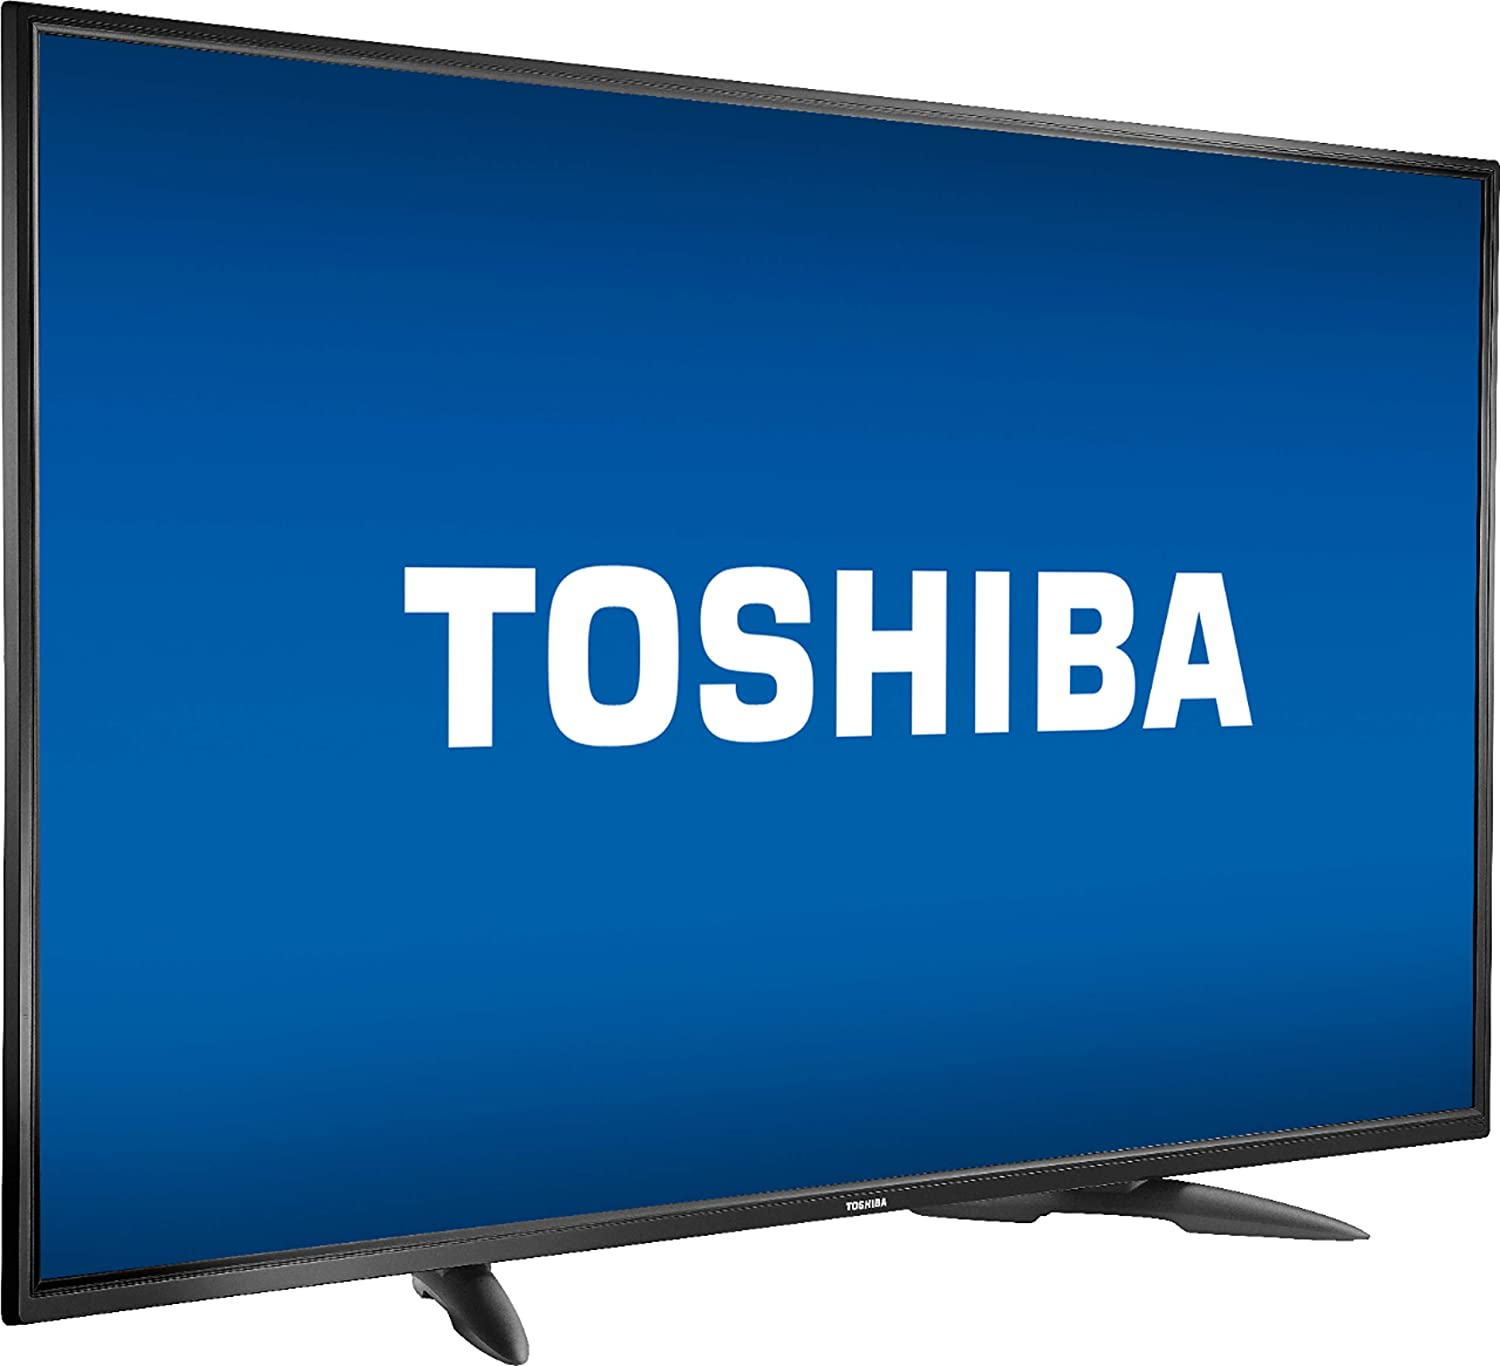 Toshiba Smart 4K UHD de 55 pulgadas con Doble Vision y DTS